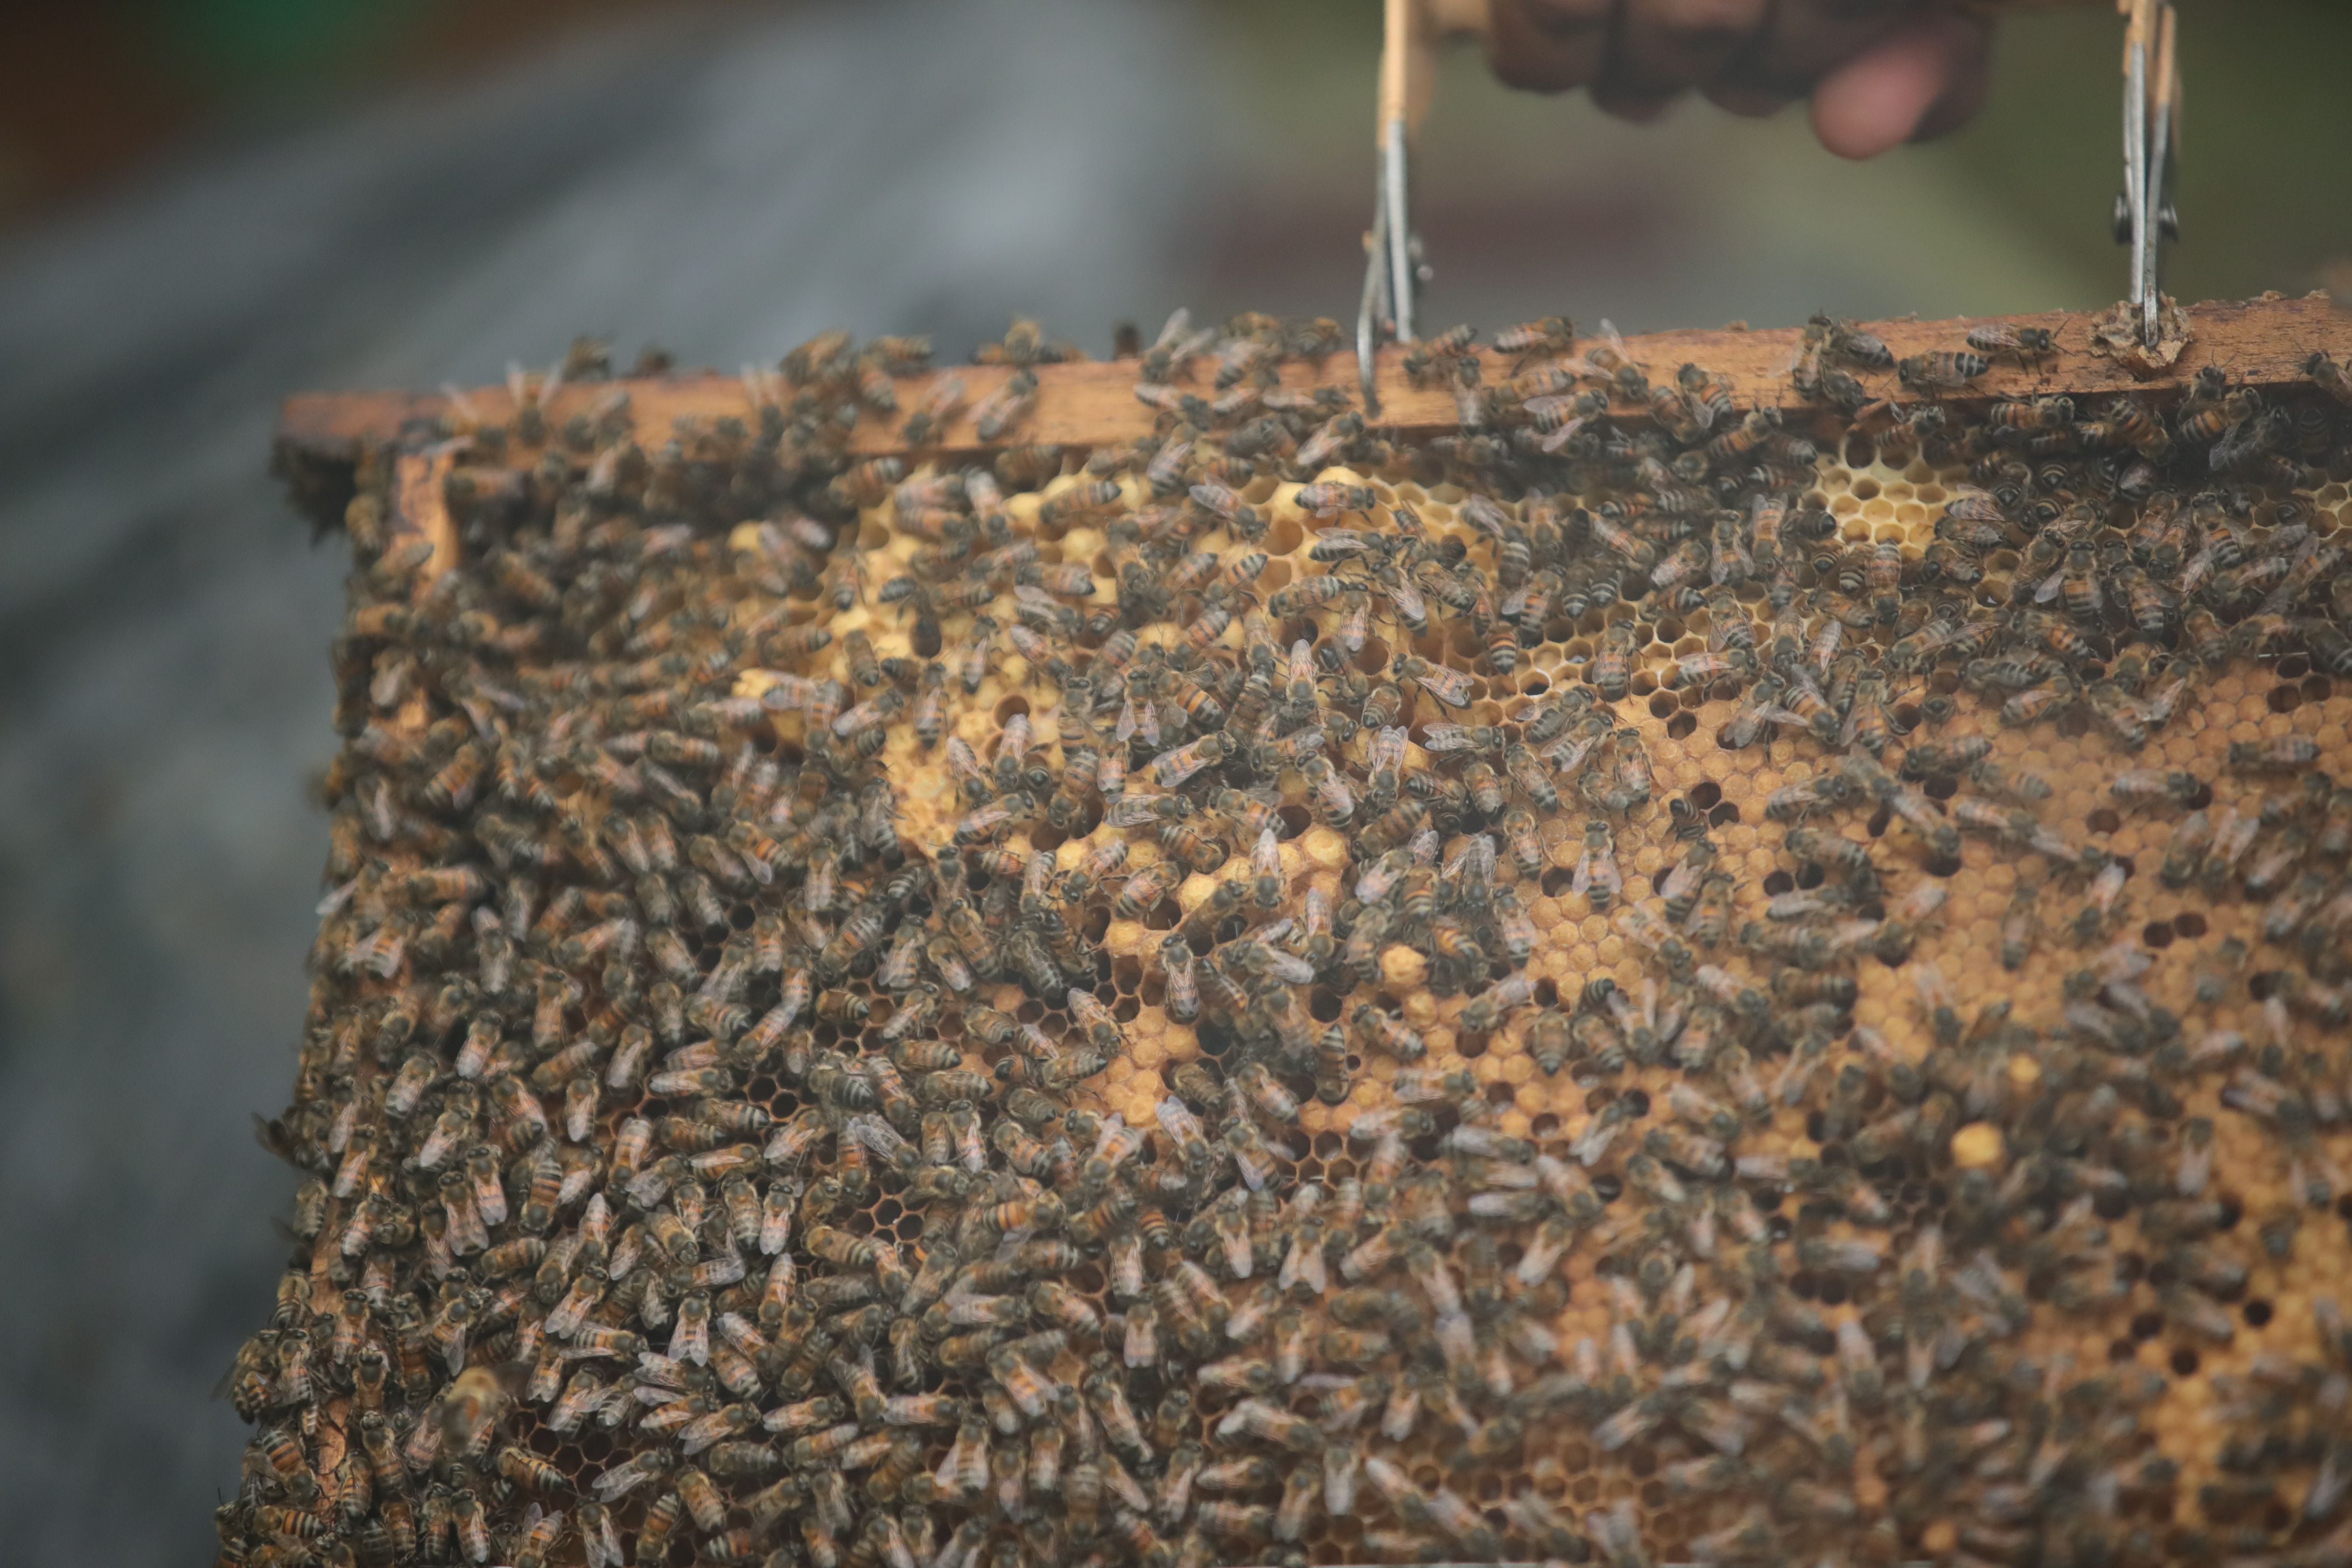 Mambo espera abrir su apiario al público dentro de algunos años, para concientizar sobre el cuido de las abejas. Foto: Alonso Tenorio.